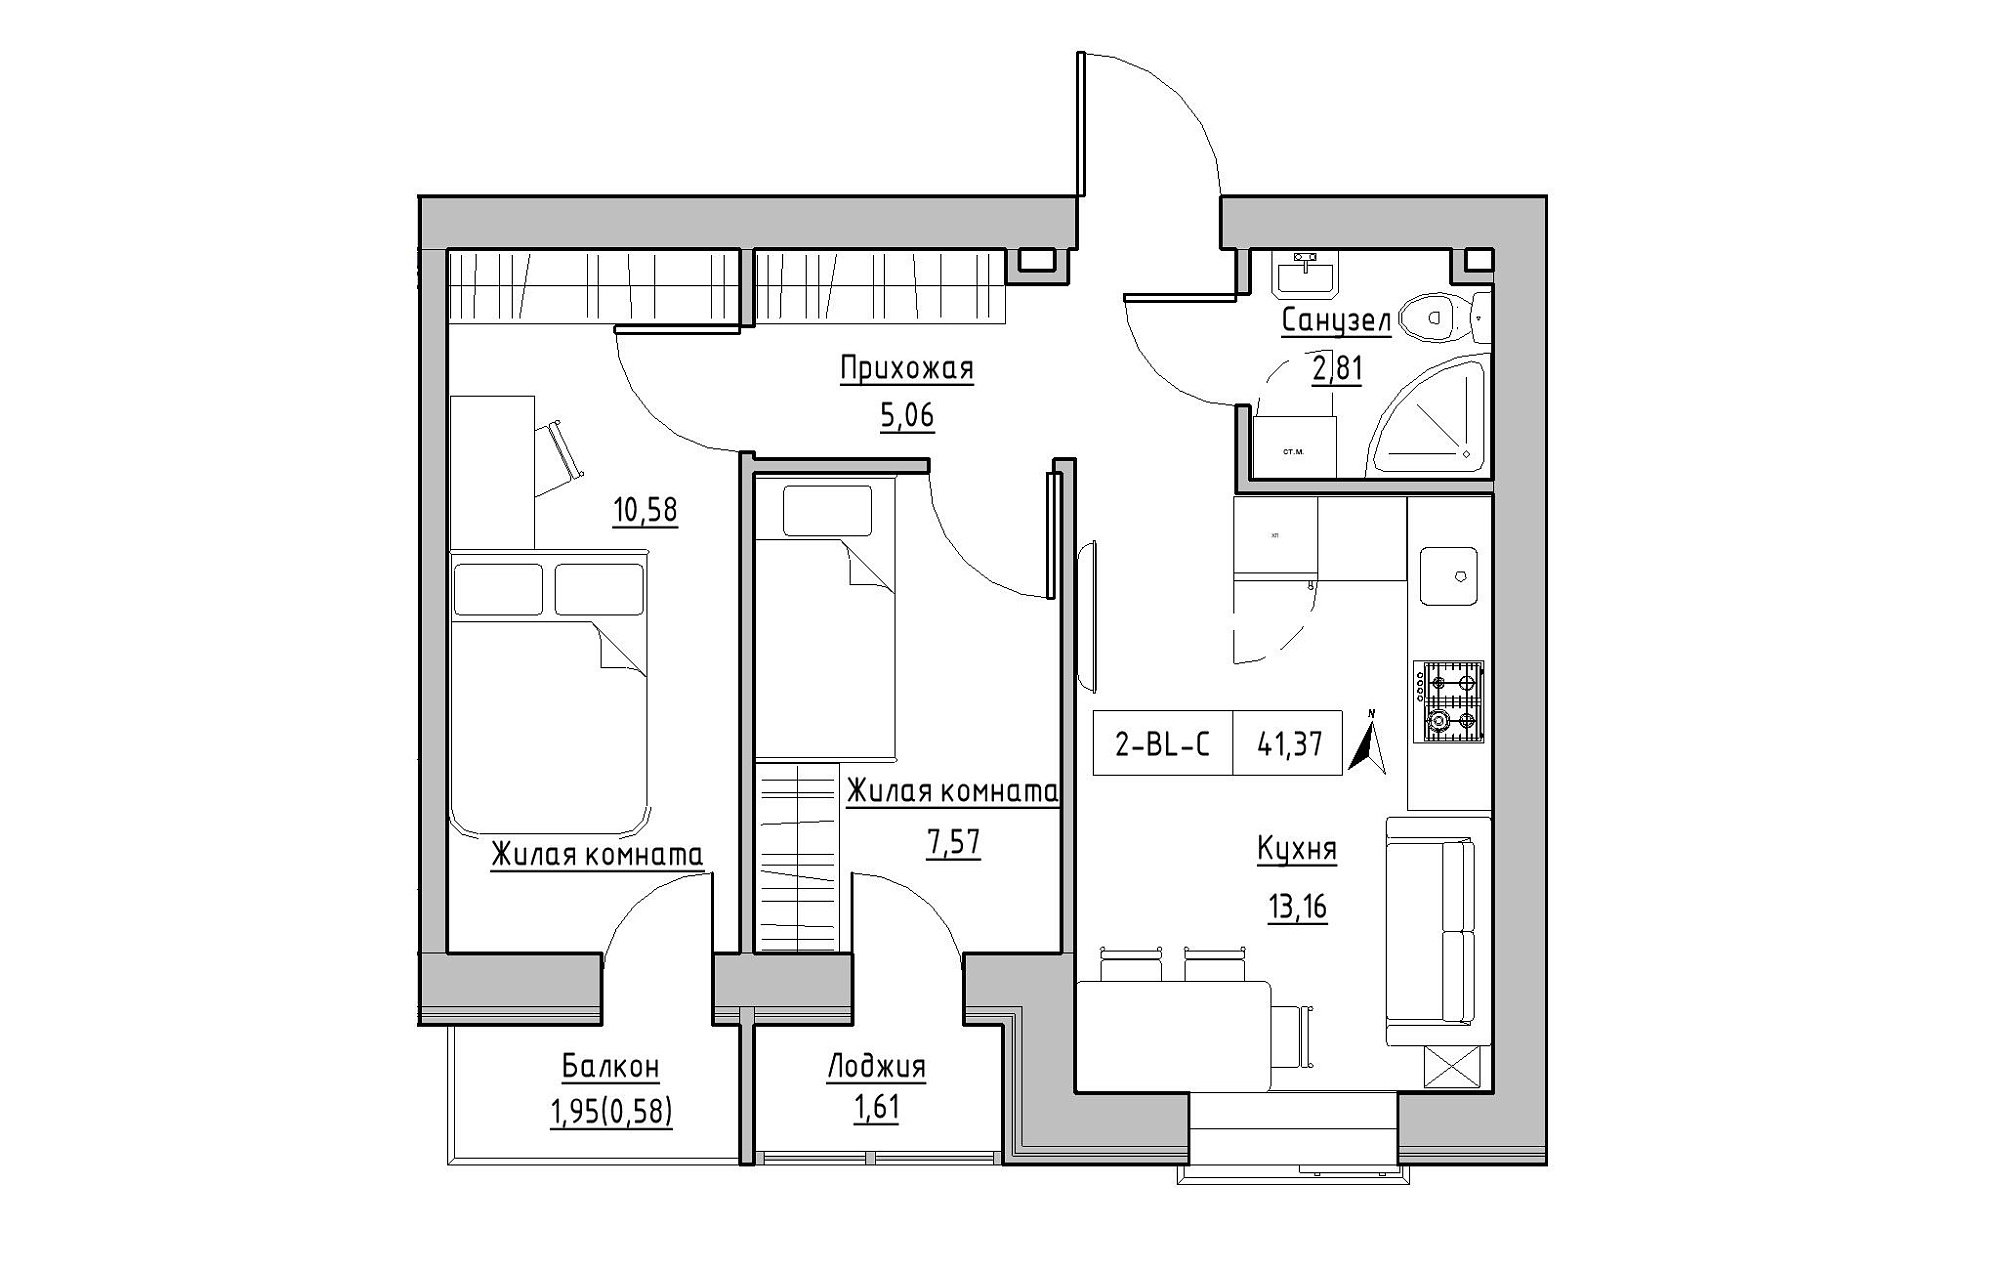 Планировка 2-к квартира площей 41.37м2, KS-019-02/0011.